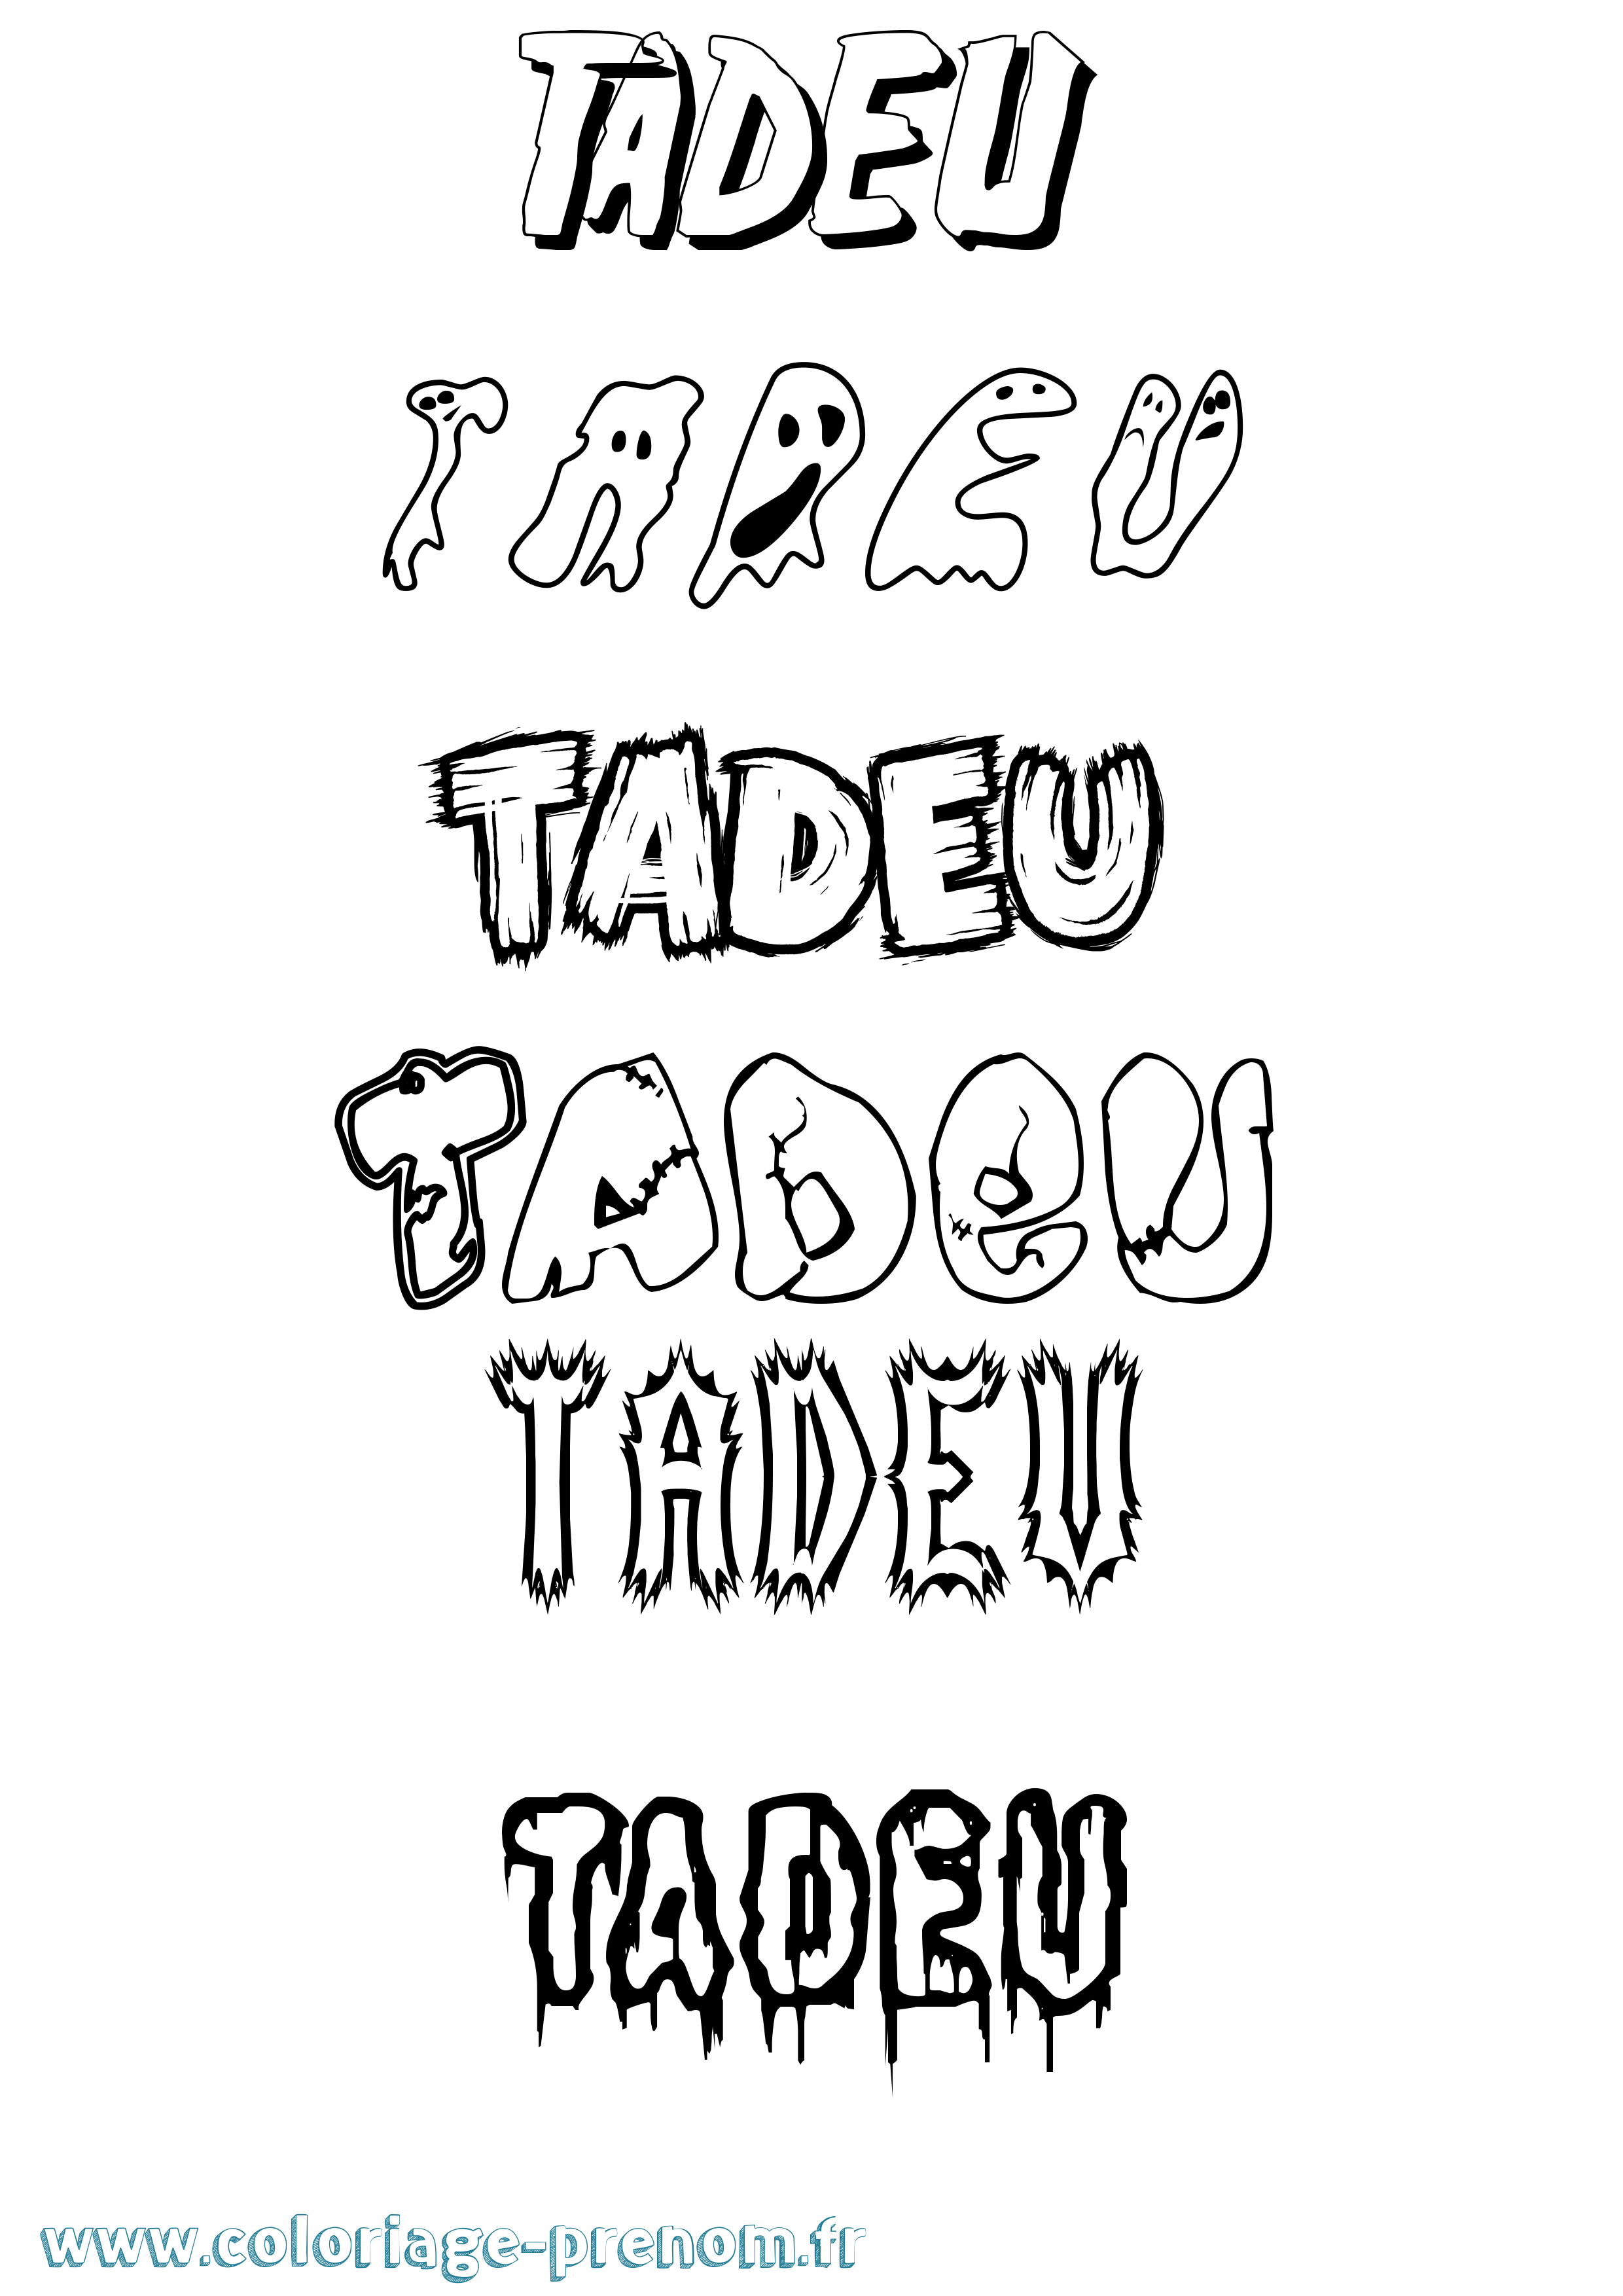 Coloriage prénom Tadeu Frisson